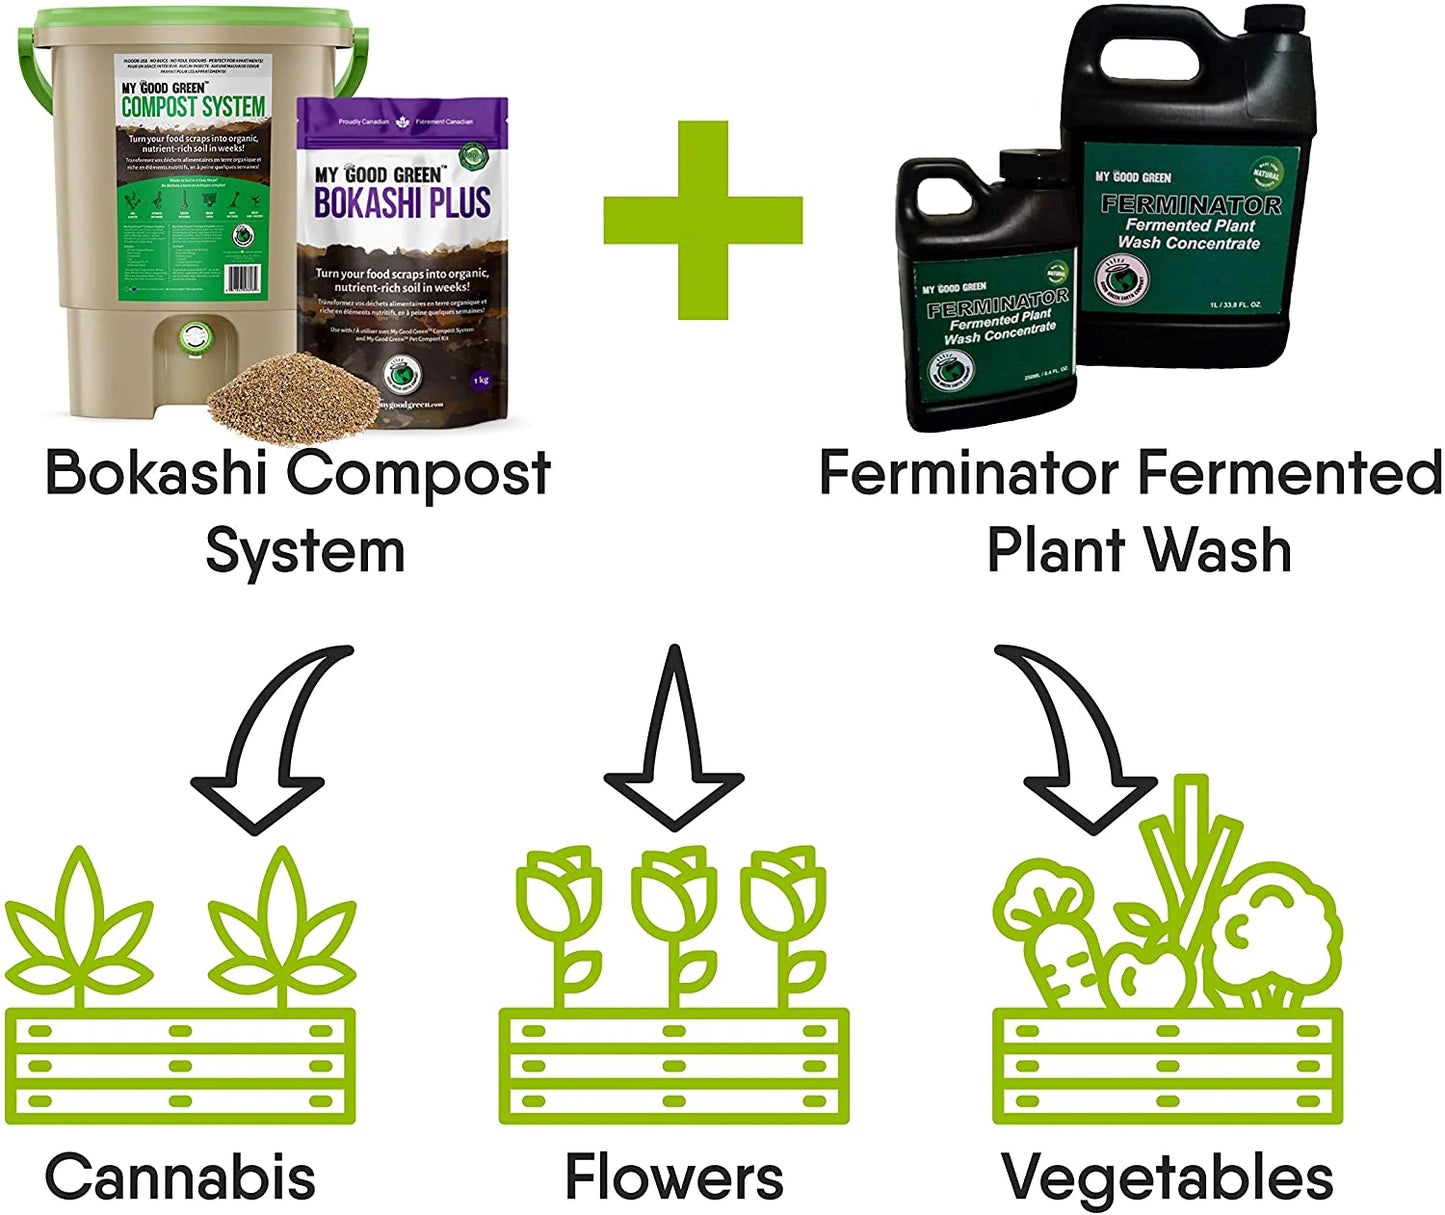 My Good Green Ferminator Organic Plant Wash